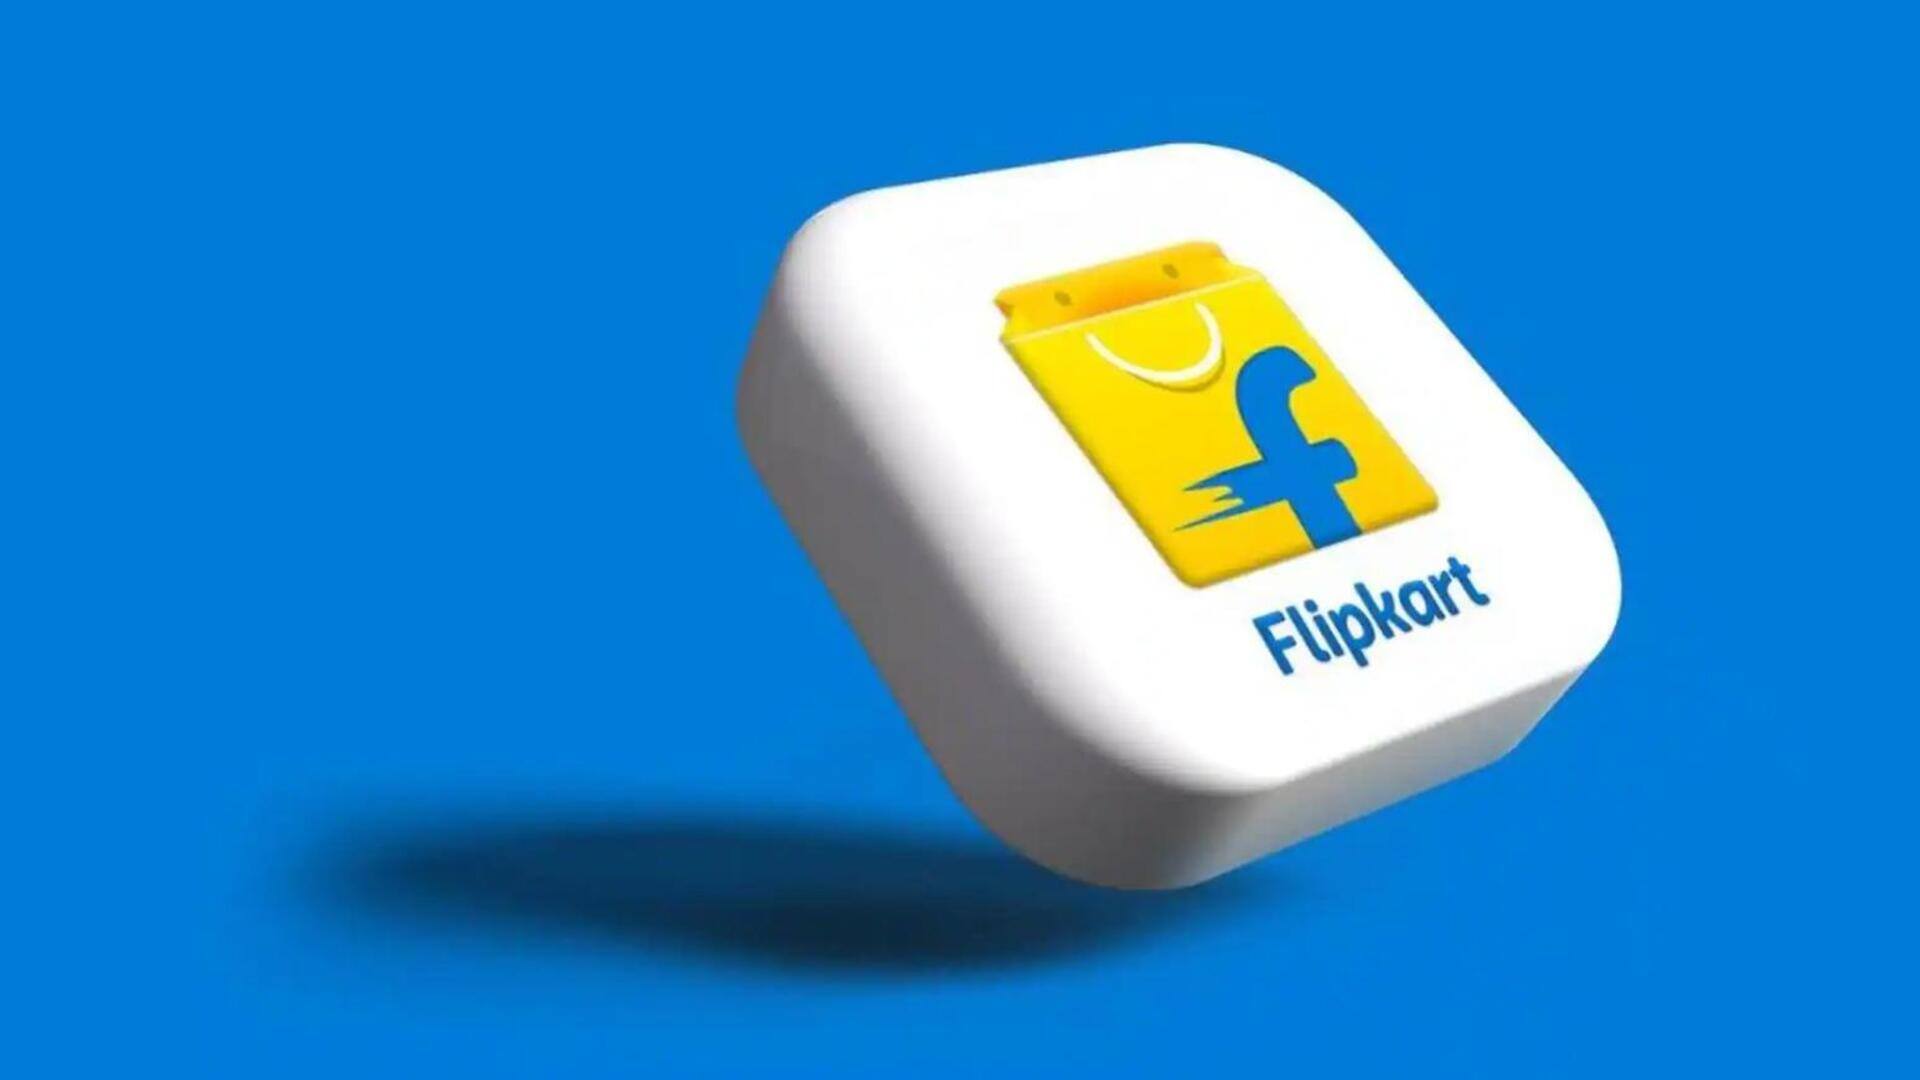 फ्लिपकार्ट ने युवक का आईफोन ऑर्डर किया था रद्द, अब देना पड़ेगा 10,000 रुपये मुआवजा 